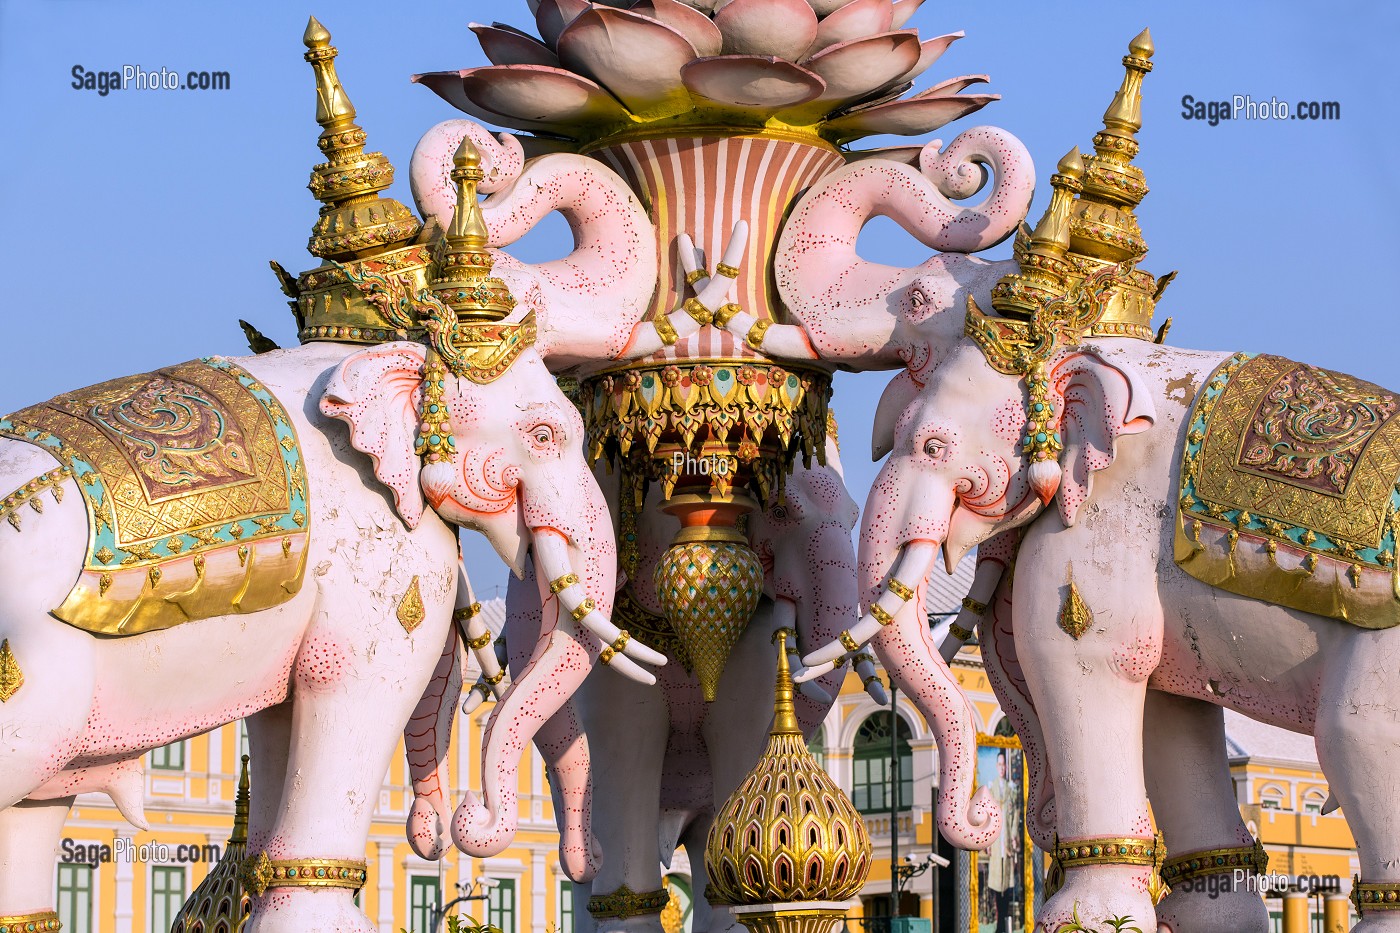 ELEPHANTS ROSES, STATUES A LA SYMBOLIQUE RELIGIEUSE, BOUDDHISTE, A COTE DU PALAIS ROYAL, BANGKOK, THAILANDE, ASIE 